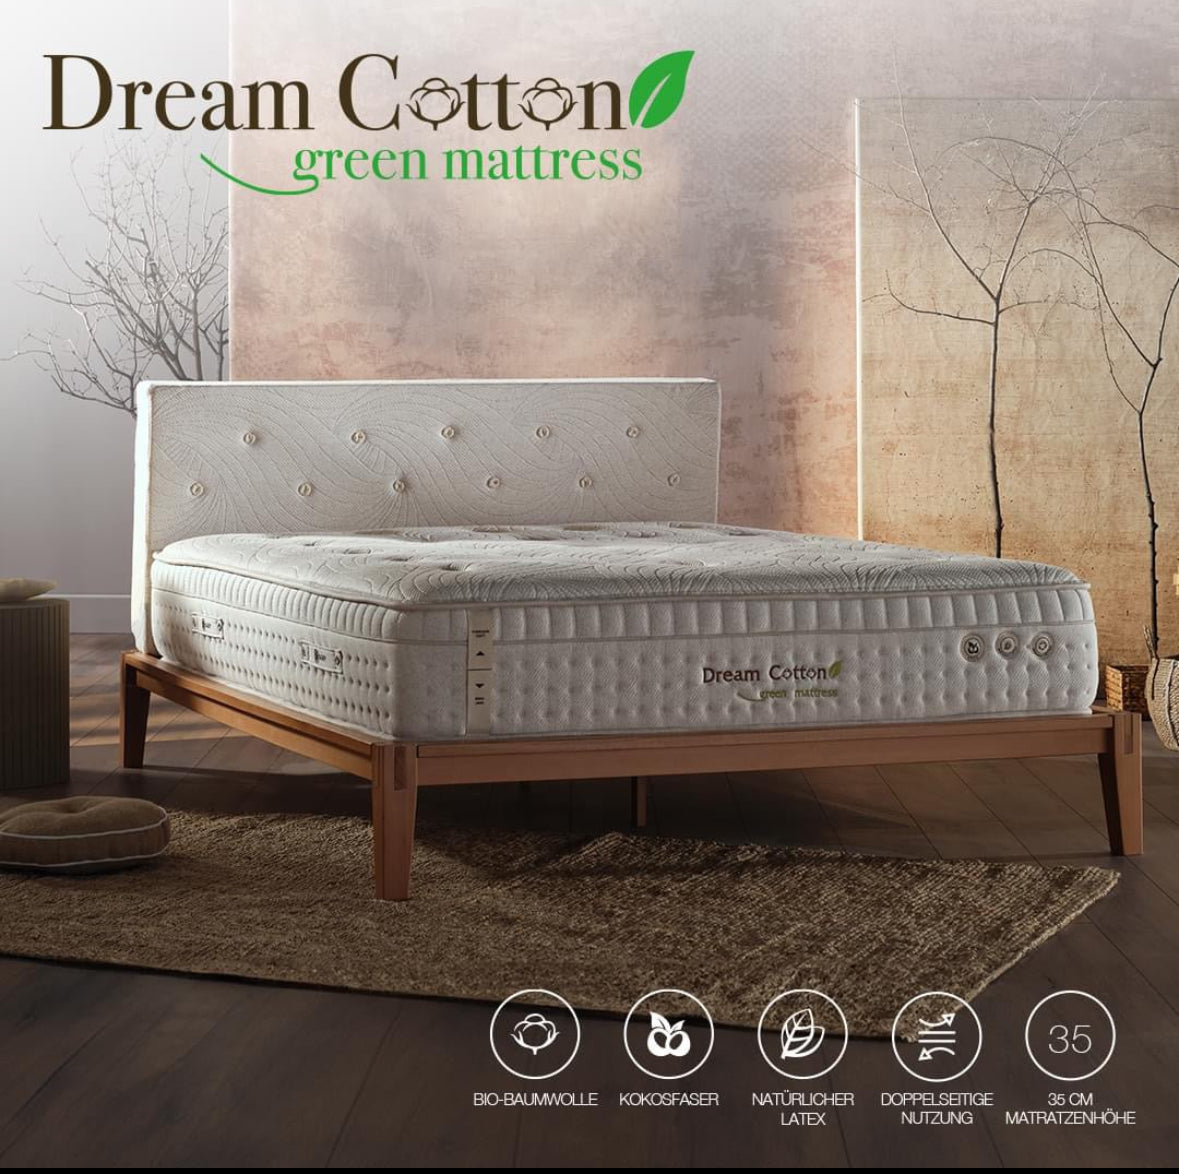 Dream Cotton Green mattress